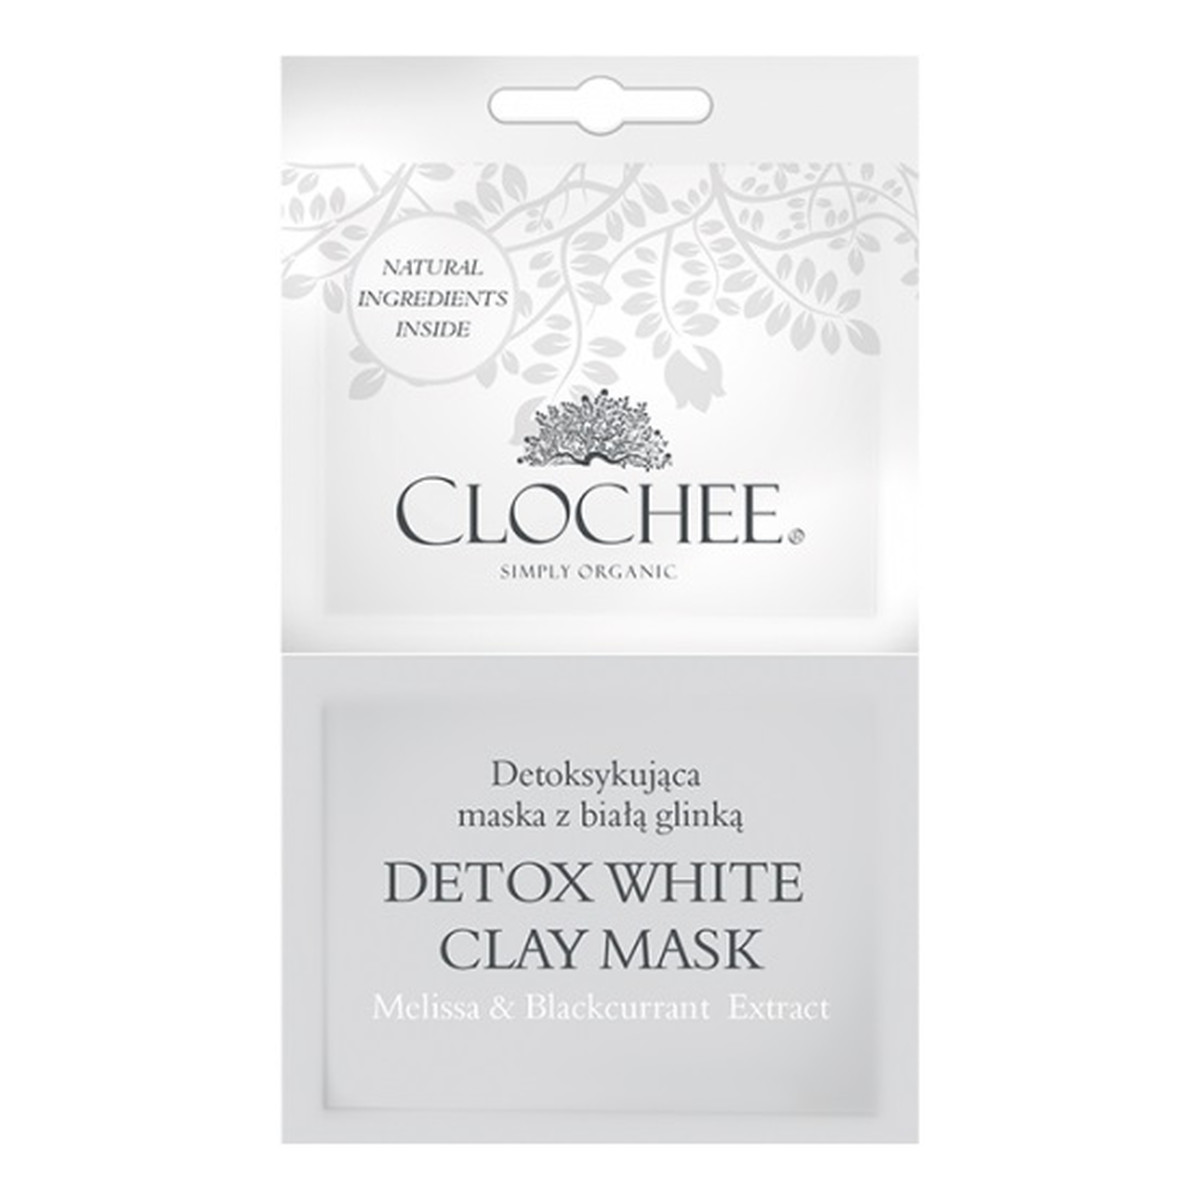 Clochee detoksykująca maska z białą glinką 2 x 6ml 6ml